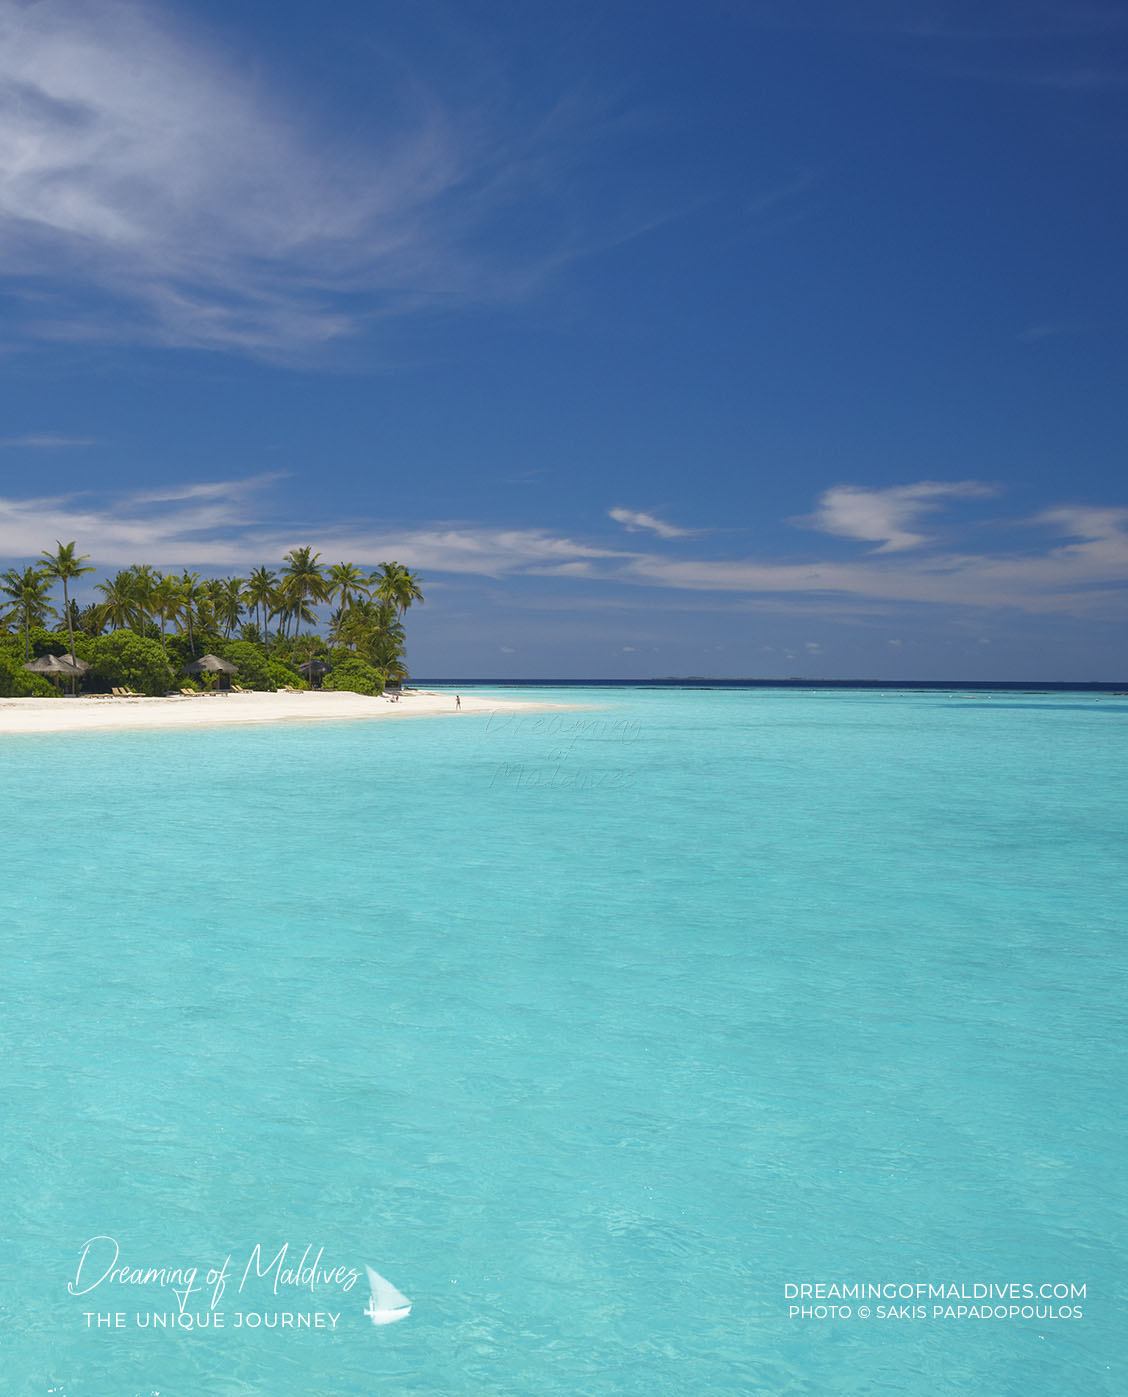 Vue aérienne d'une île déserte des Maldives